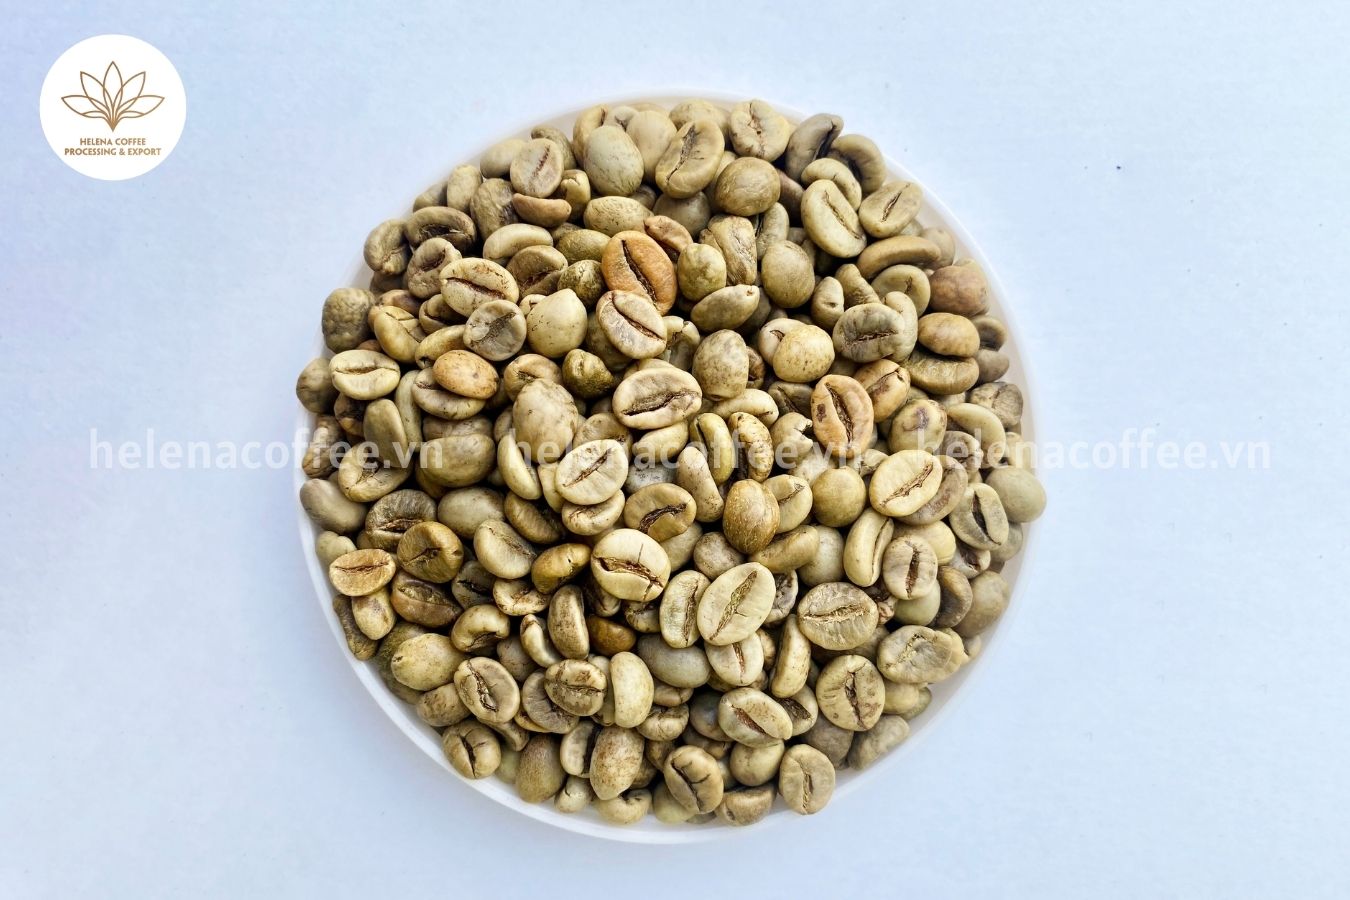 The Best Coffee Bean Supplier in Vietnam